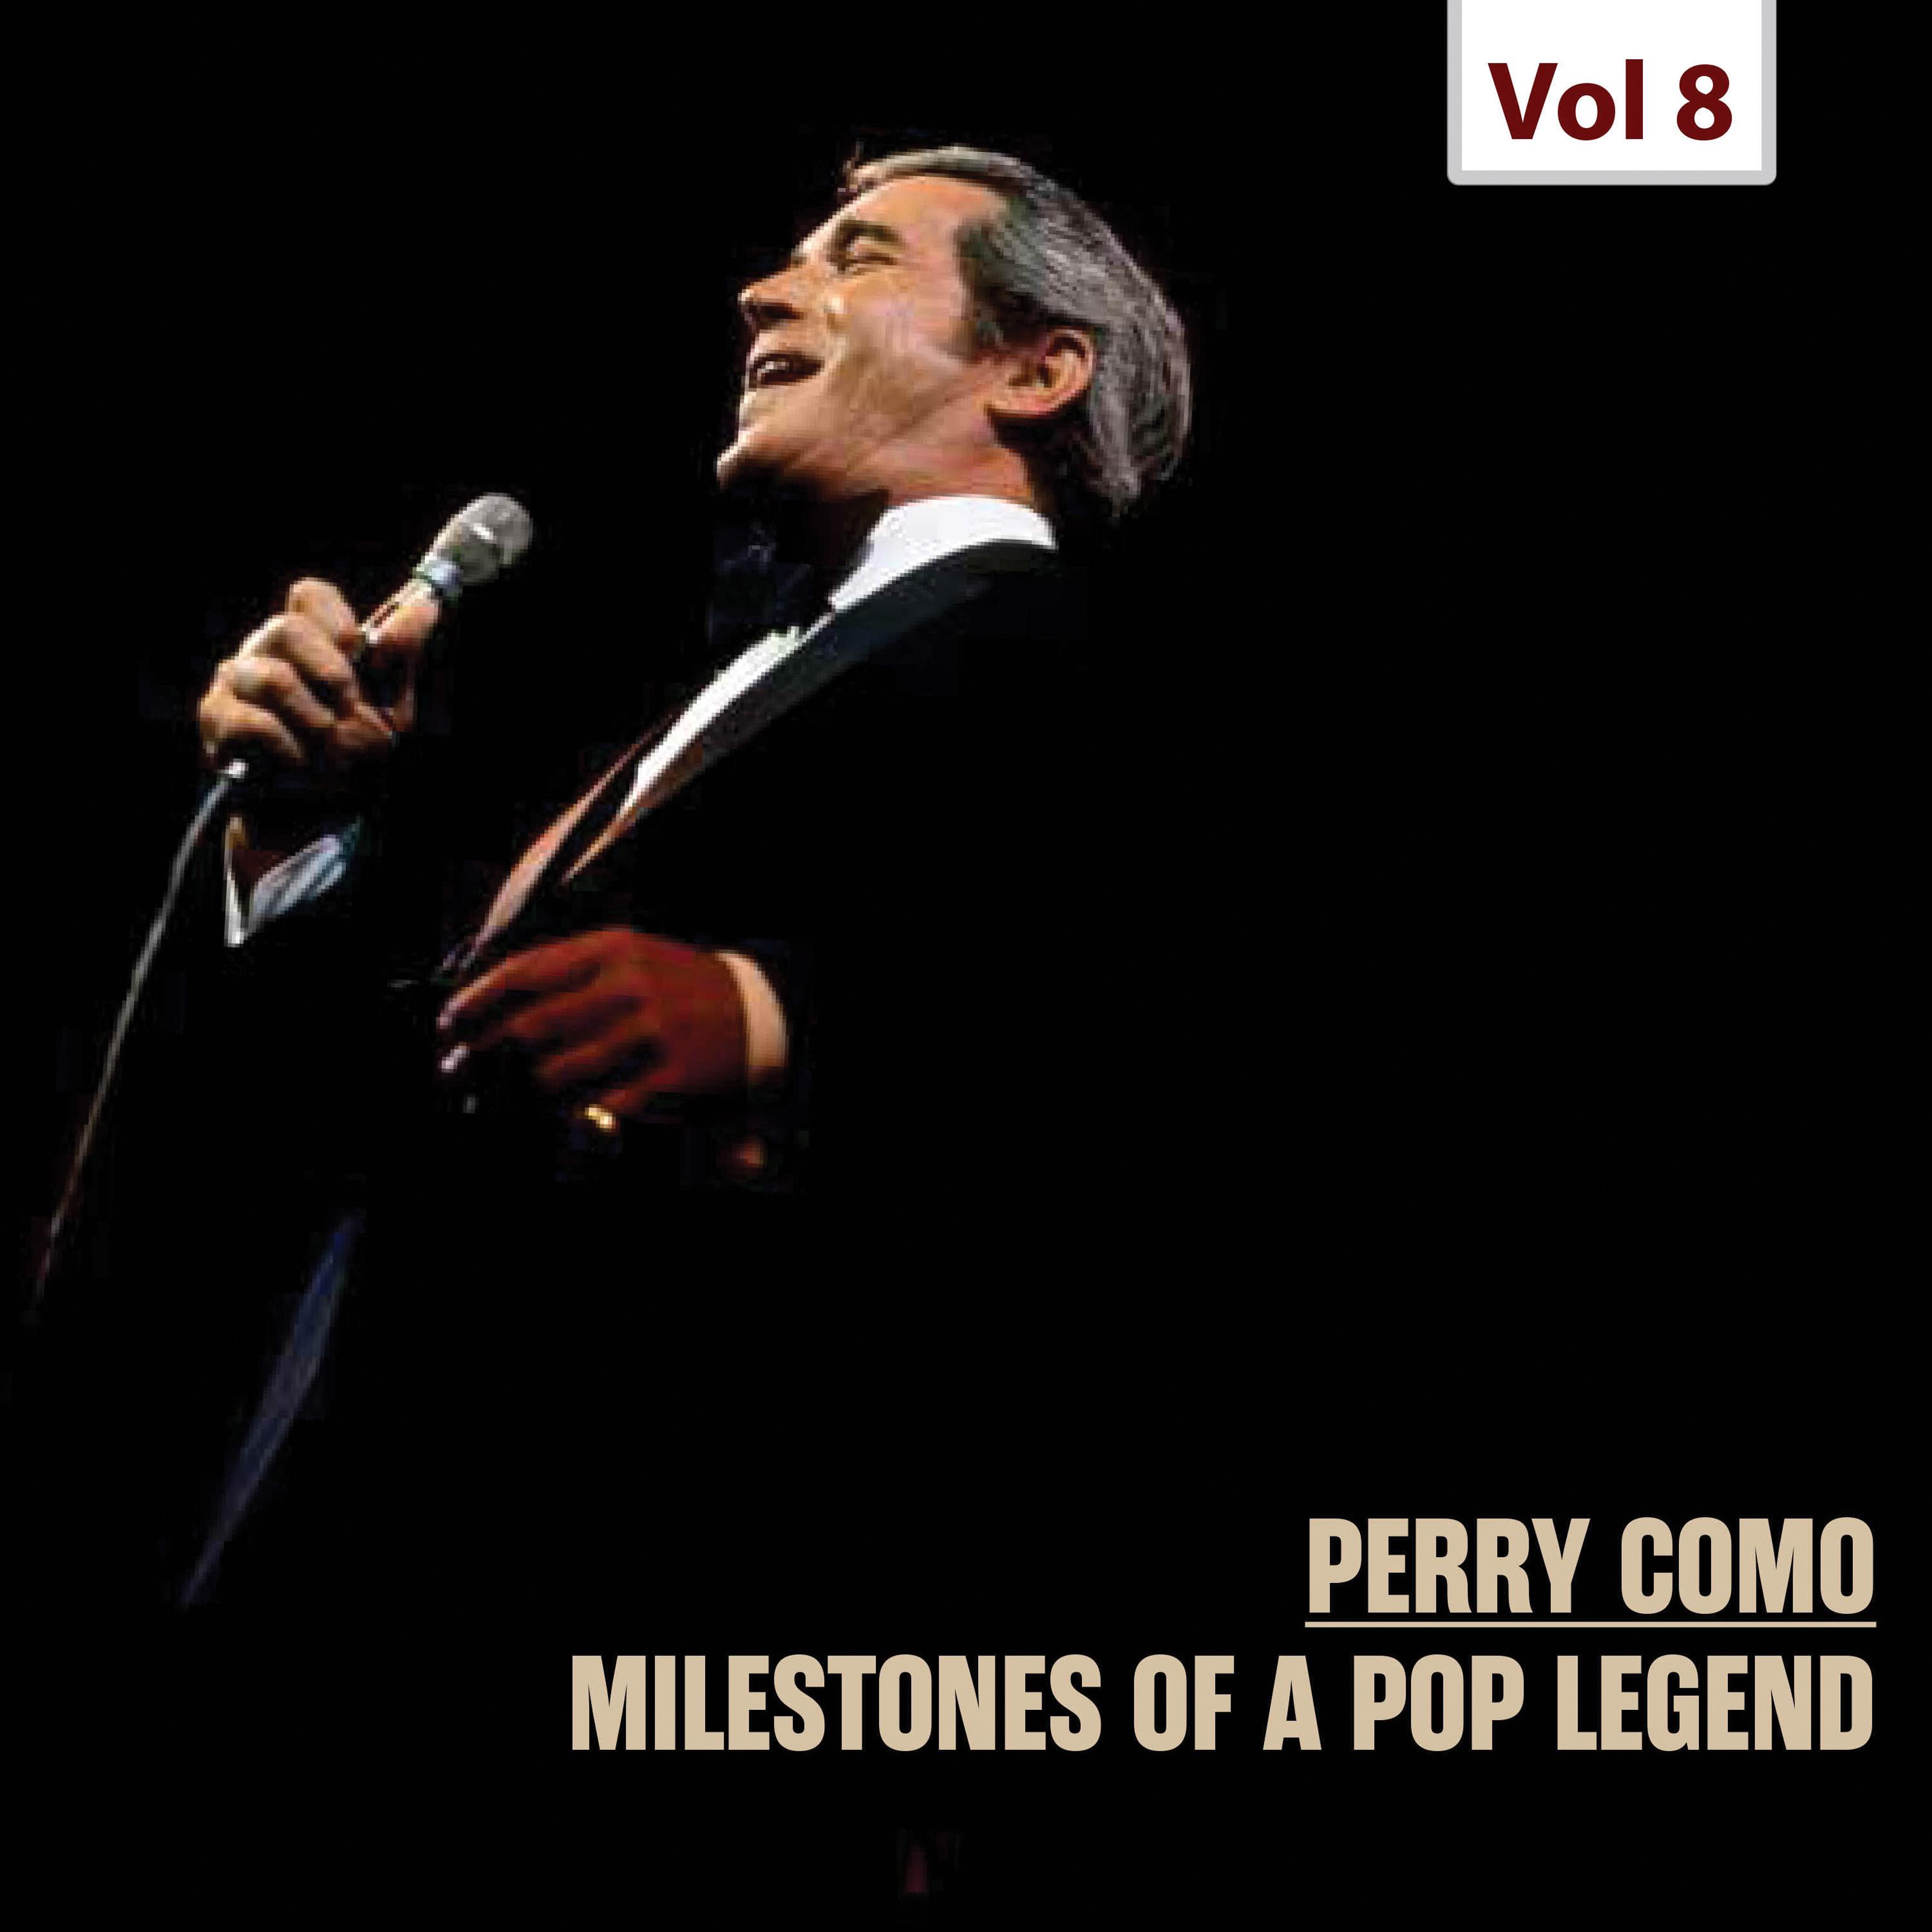 Milestones of a Pop Legend, Vol. 8